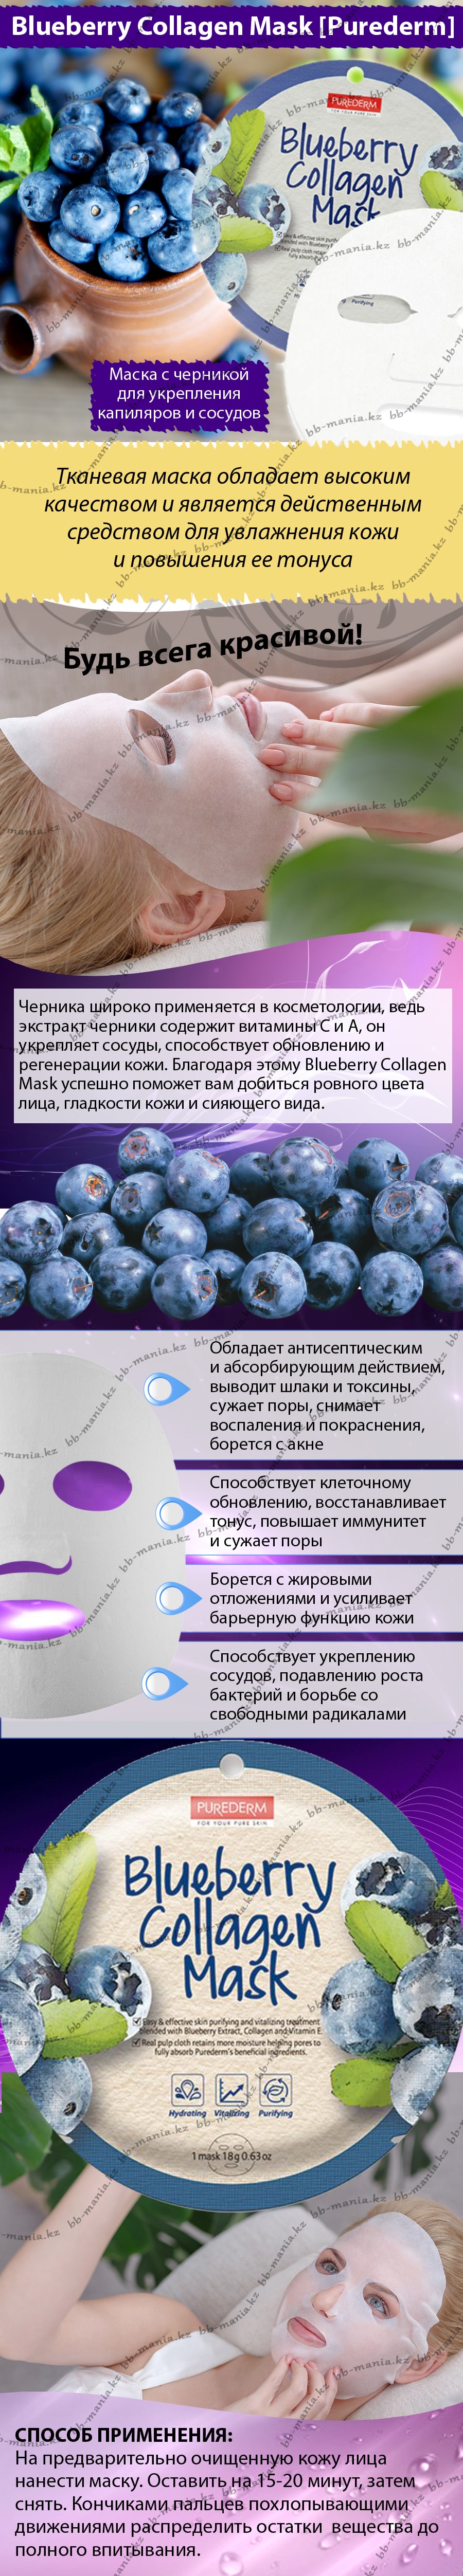 Blueberry-Collagen-Mask-[Purederm]-bbmania-min